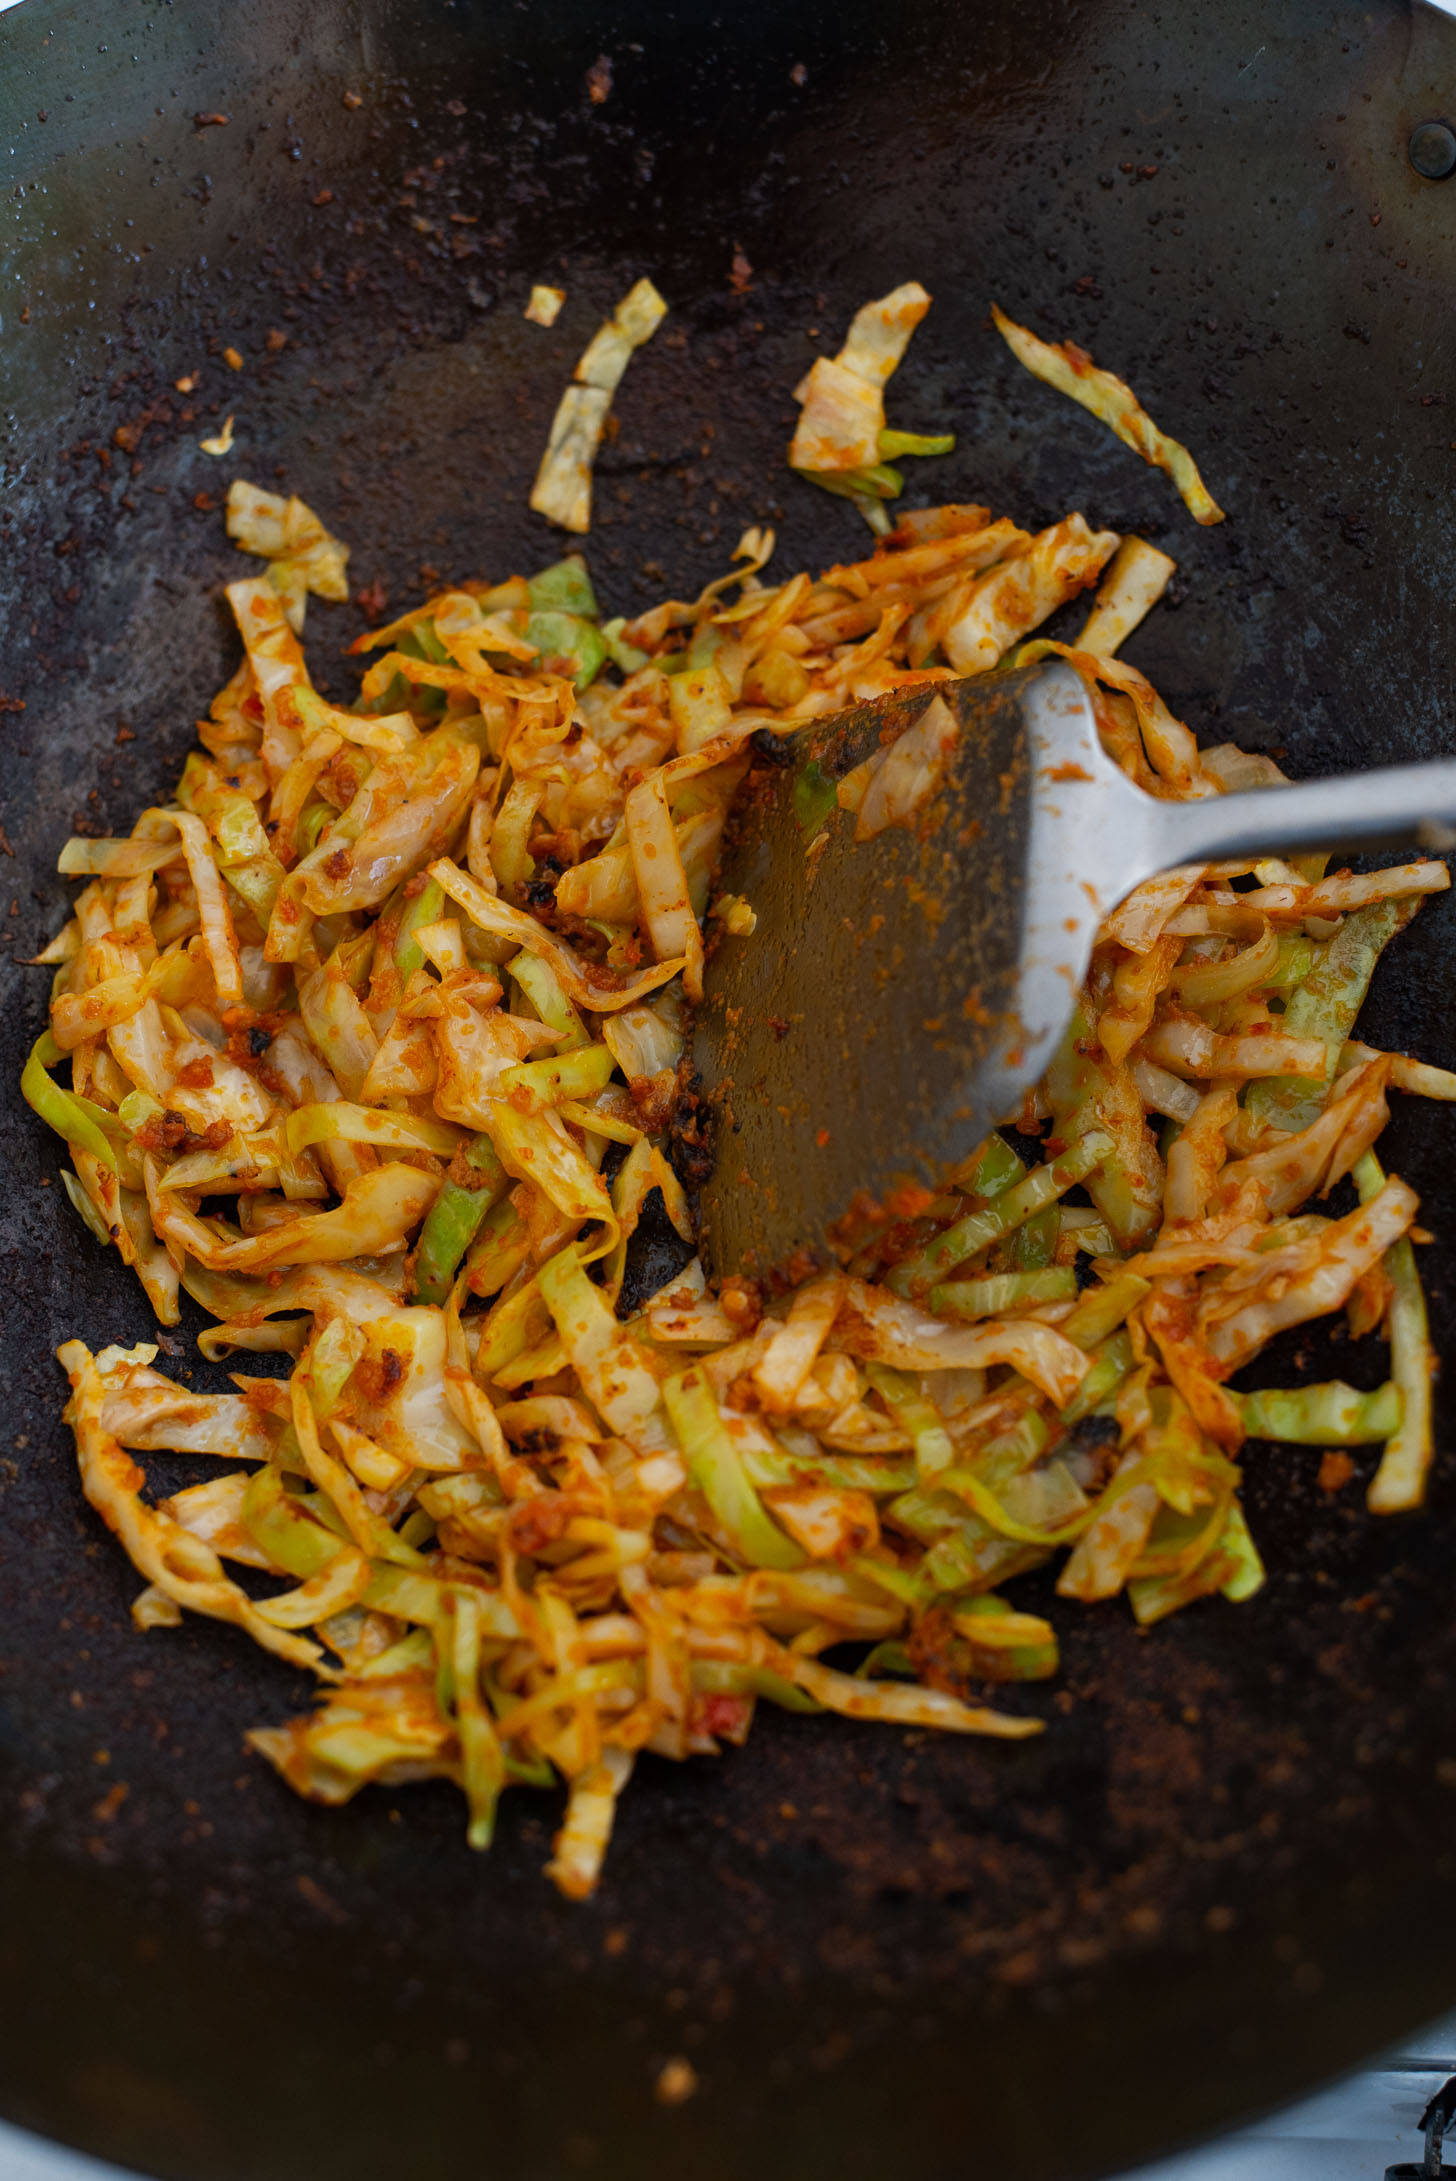 Cabbage is stir fried in chili garlic puree to make Nasi Goreng,